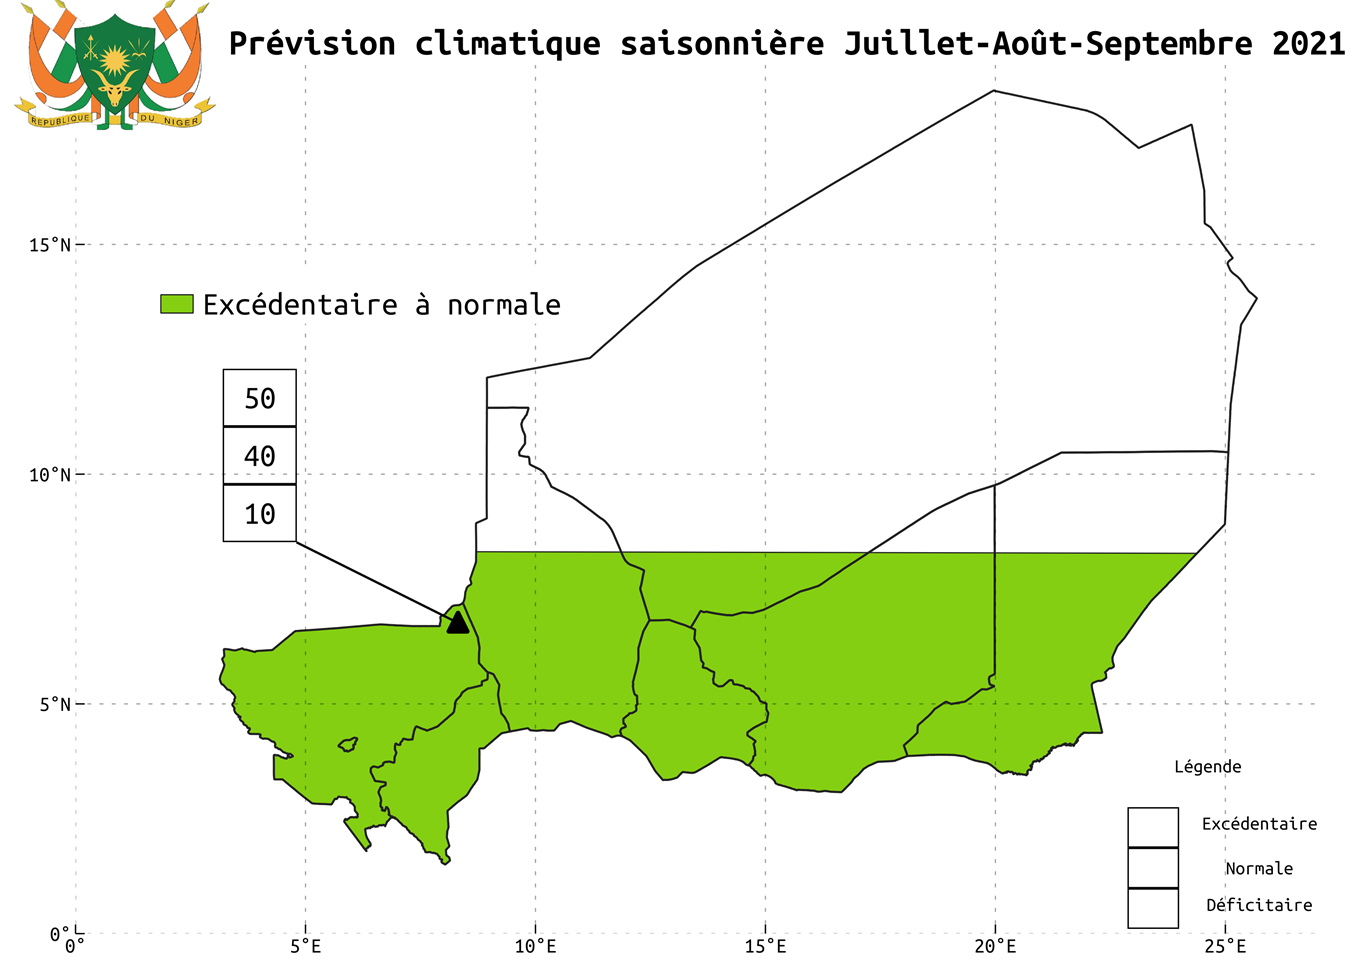 Résultats des prévisions climatiques saisonnières pour la saison hivernale 2021 sur le Niger.
Elaboré par la Direction de la Météorologie Nationale, DMN